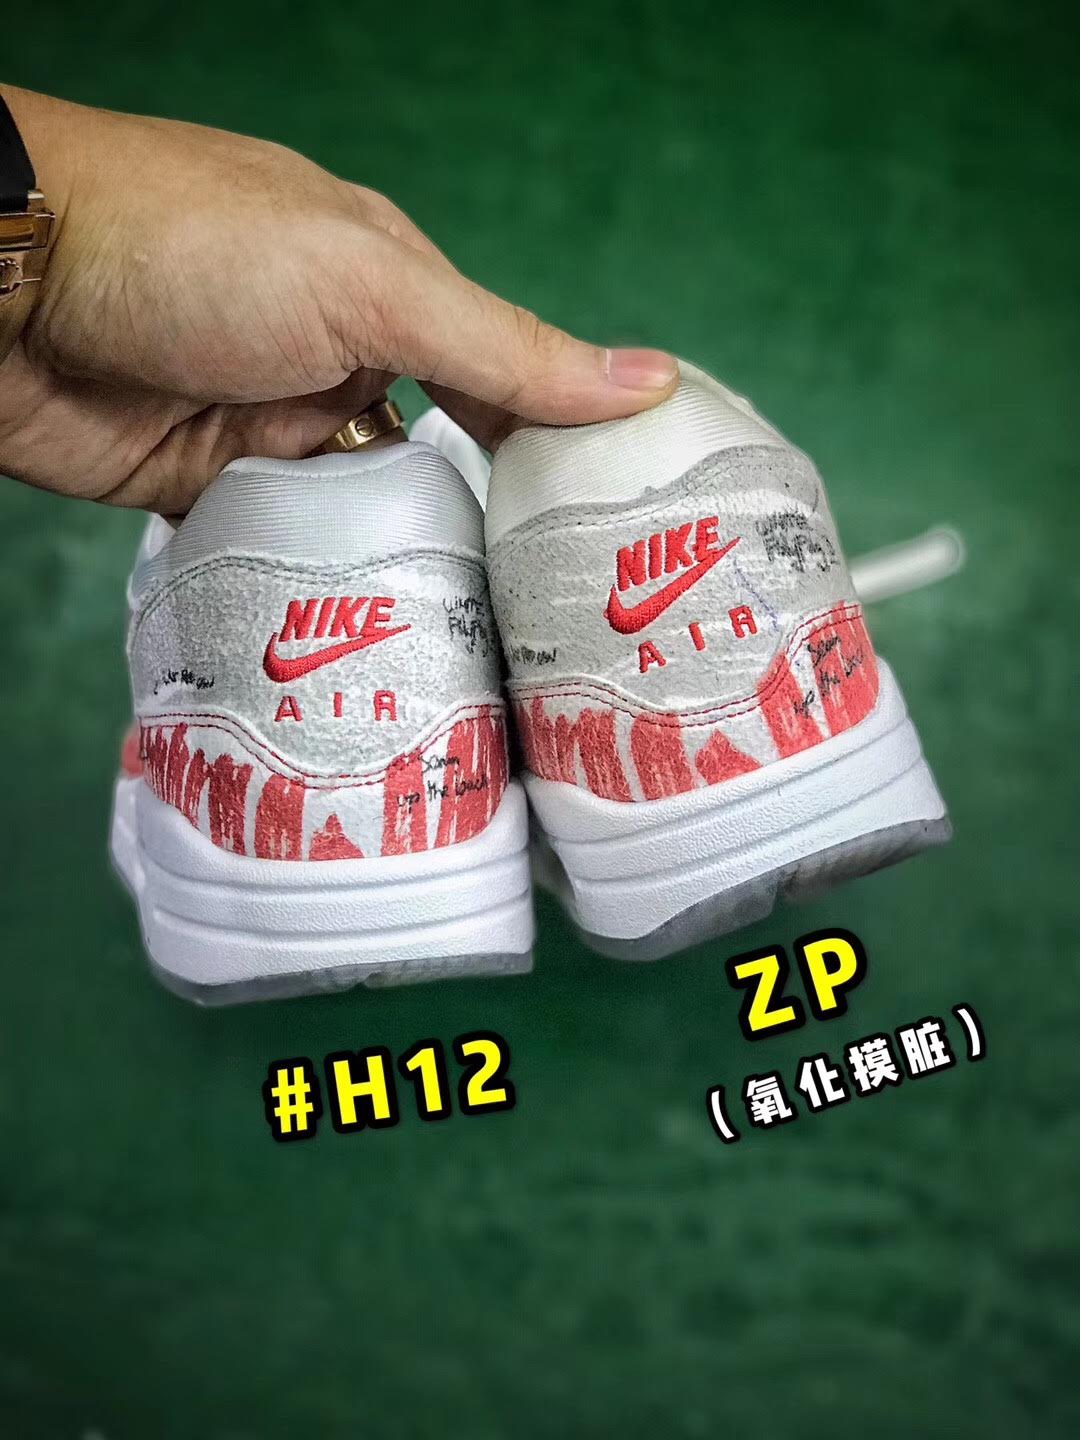 giày nike air max 1 fake và real